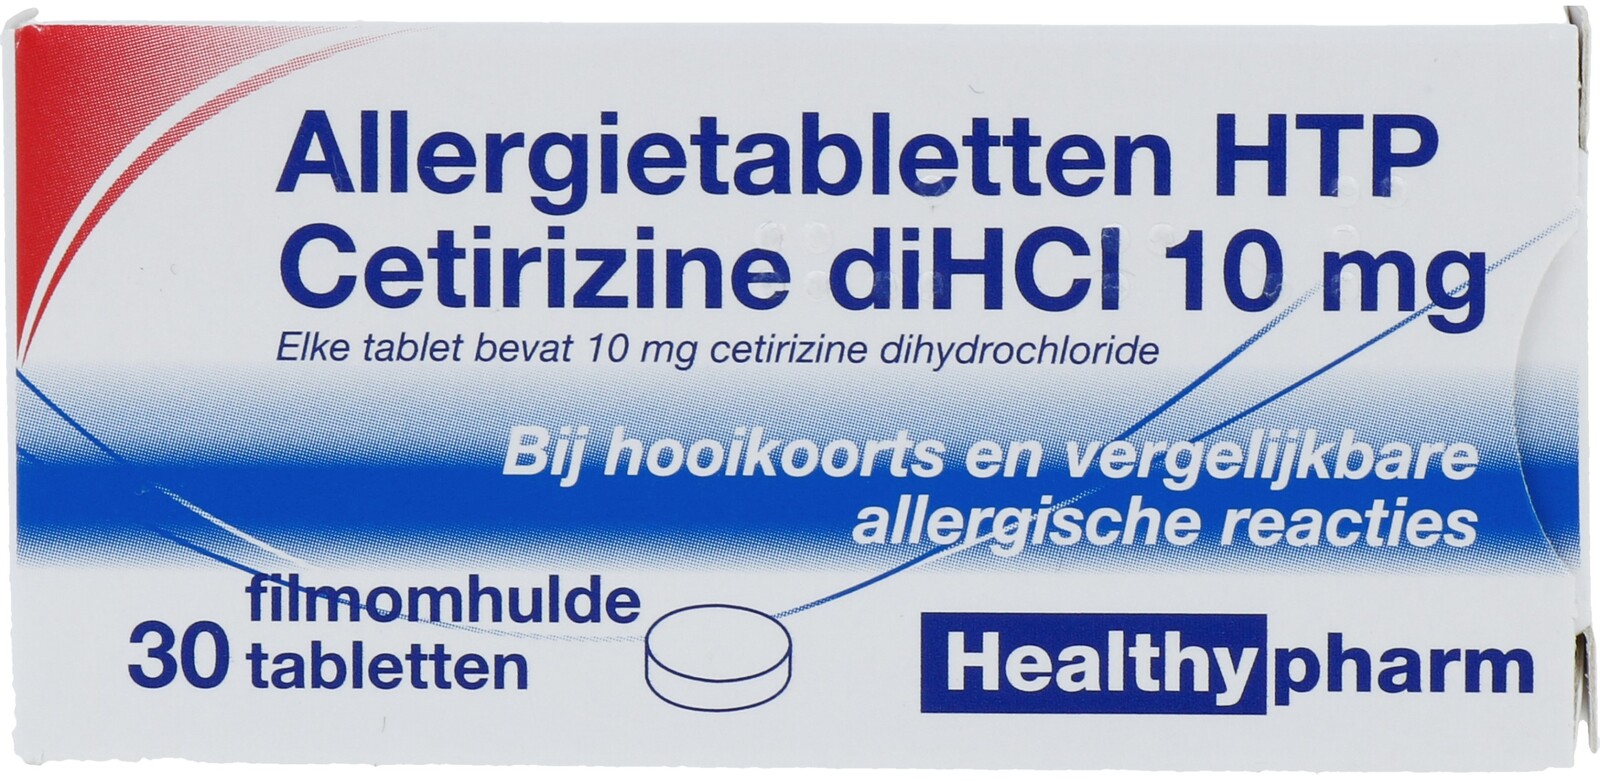 Image of Healthypharm Allergietabletten HTP Cetirizine diHCI 10mg Tabletten 